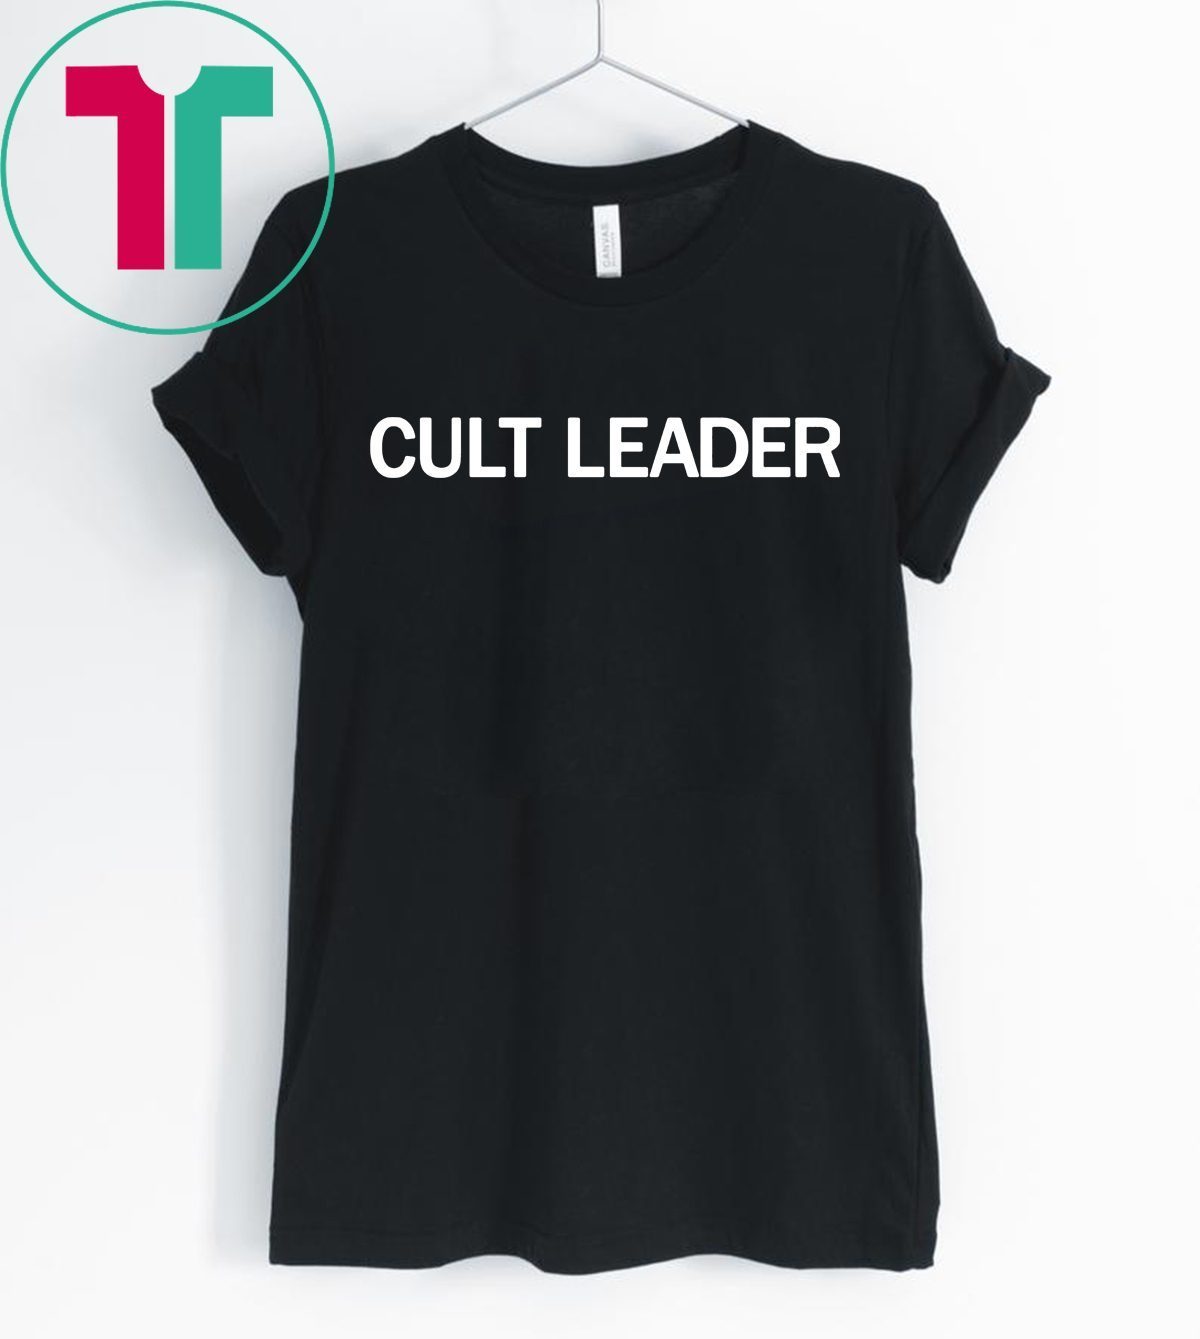 Cult leader t-shirt Cult Leader Tee - OrderQuilt.com